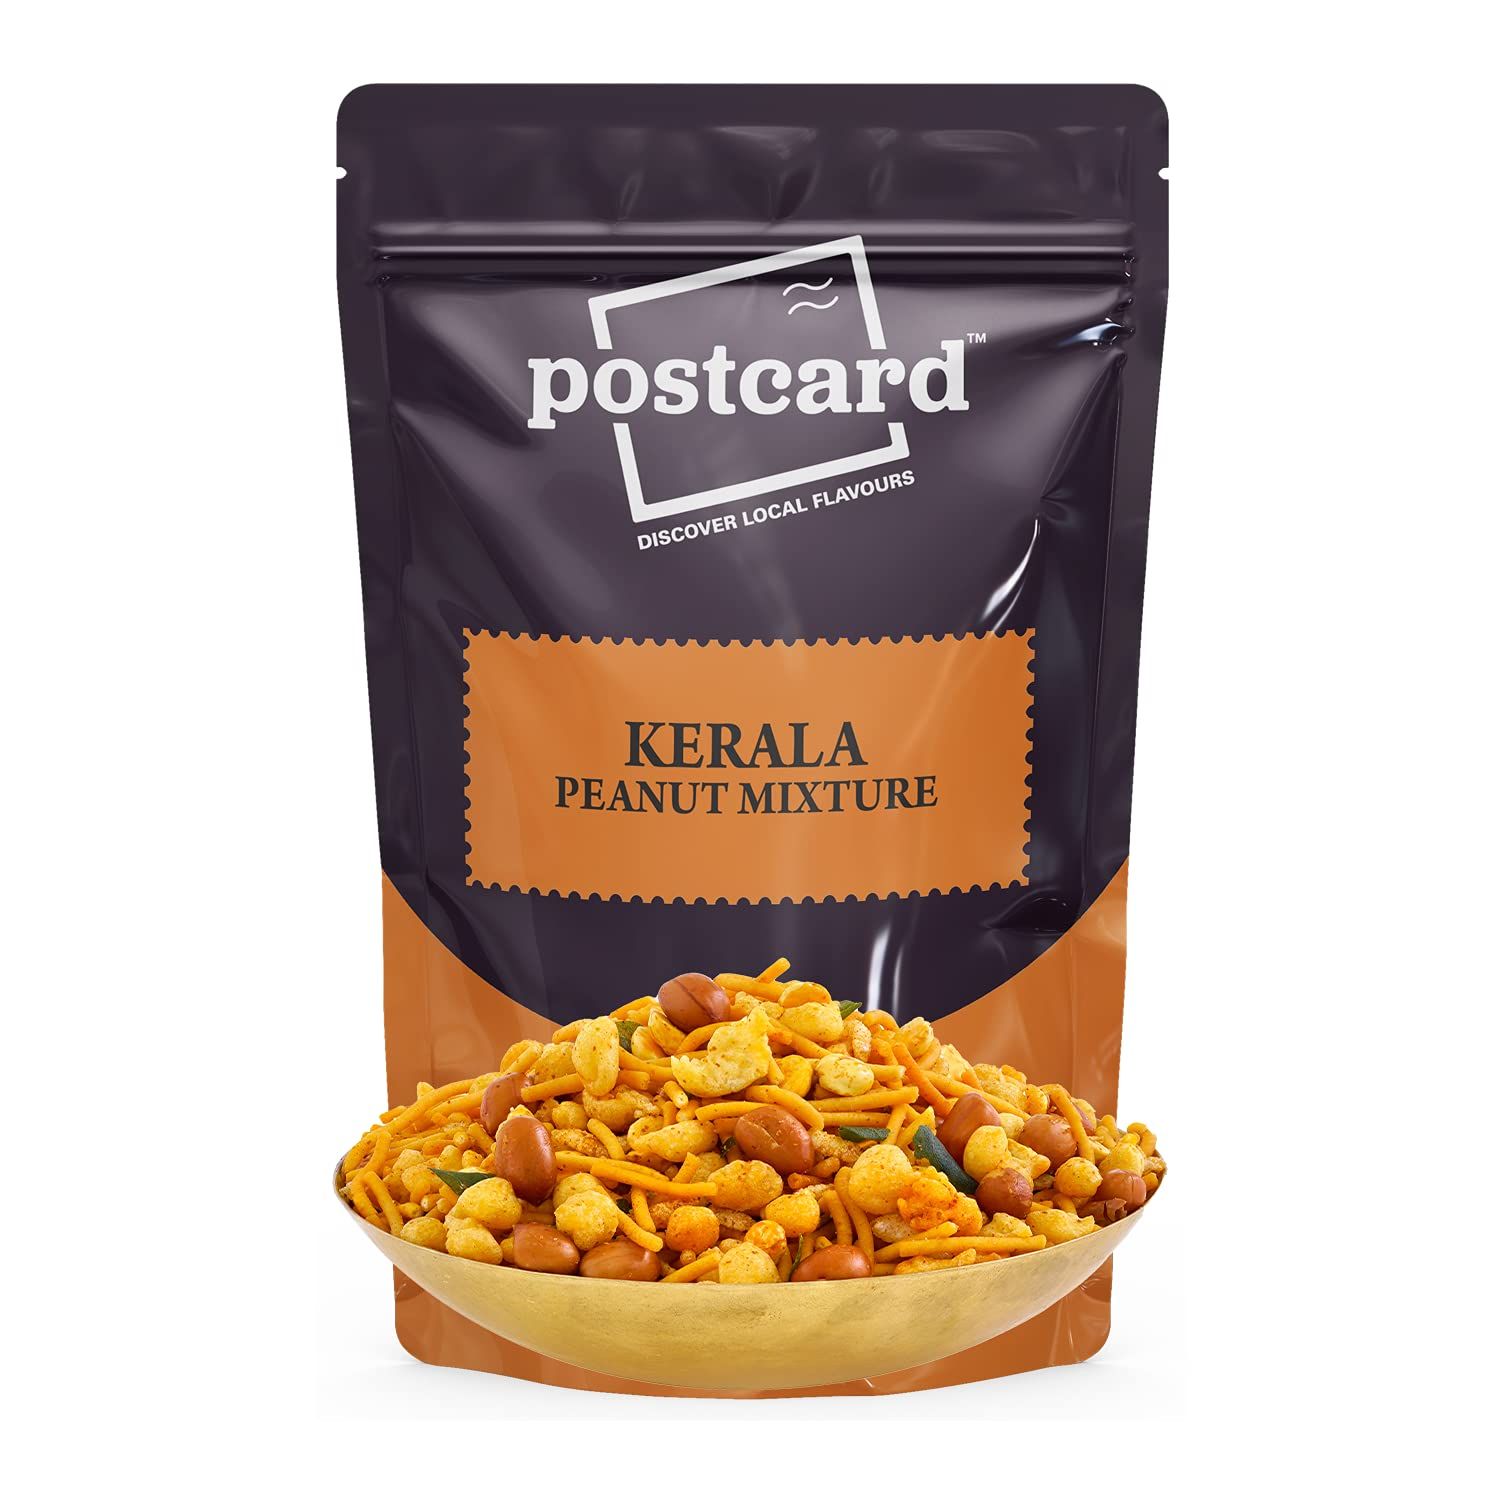 Postcard Kerala Peanut Mixture Image